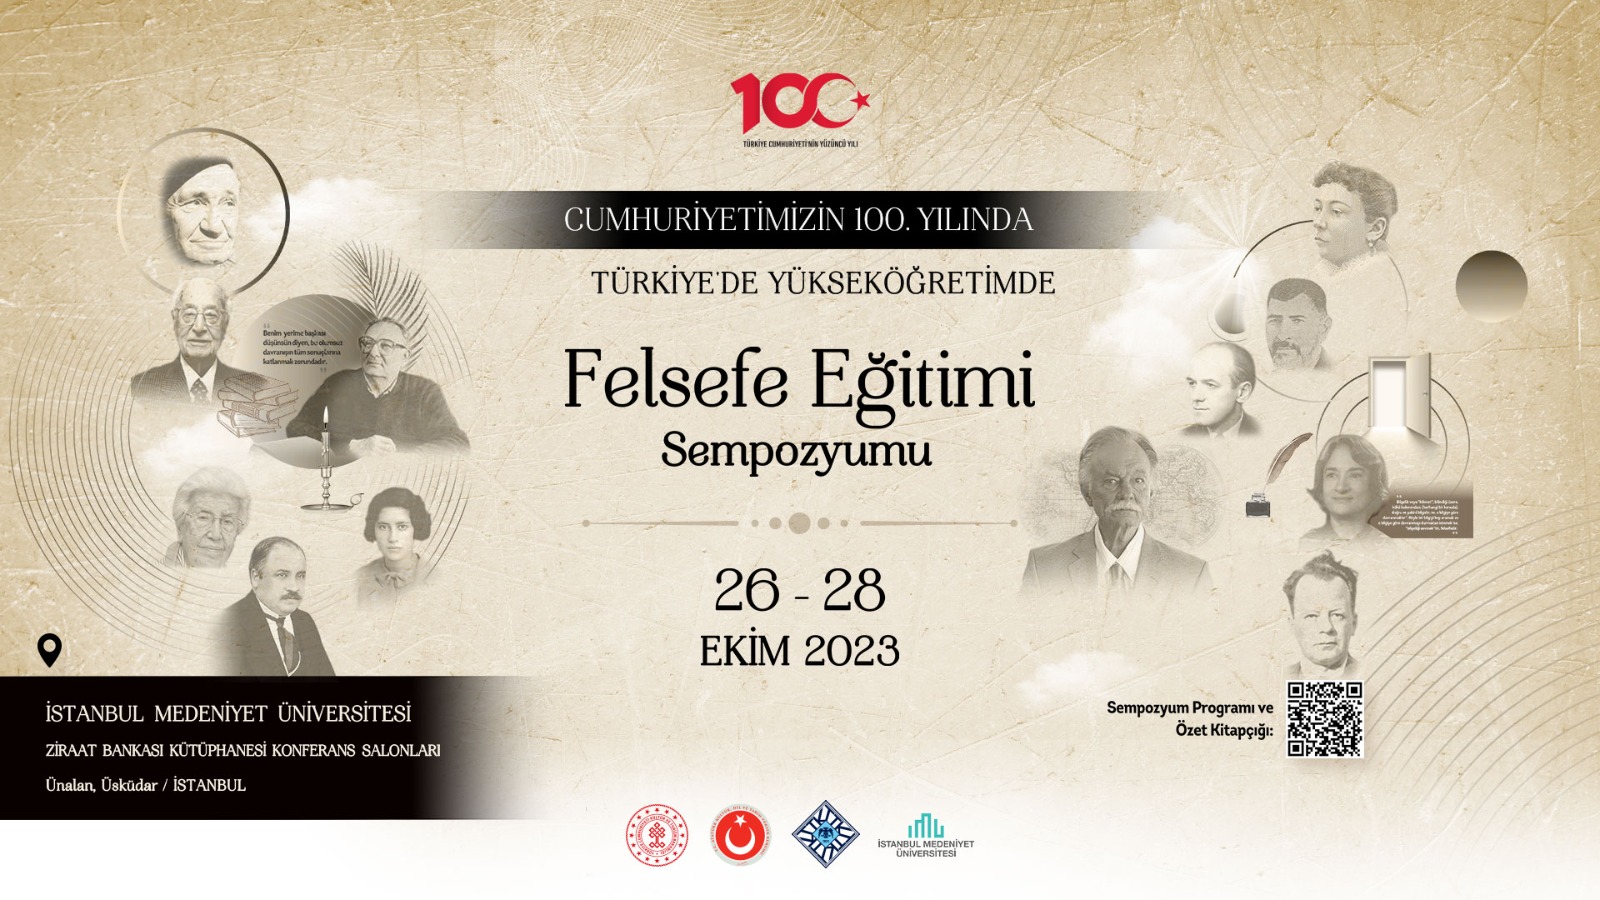  Cumhuriyet’imizin 100. Yılında Türkiye’de Yükseköğretimde Felsefe Eğitimi Sempozyumu